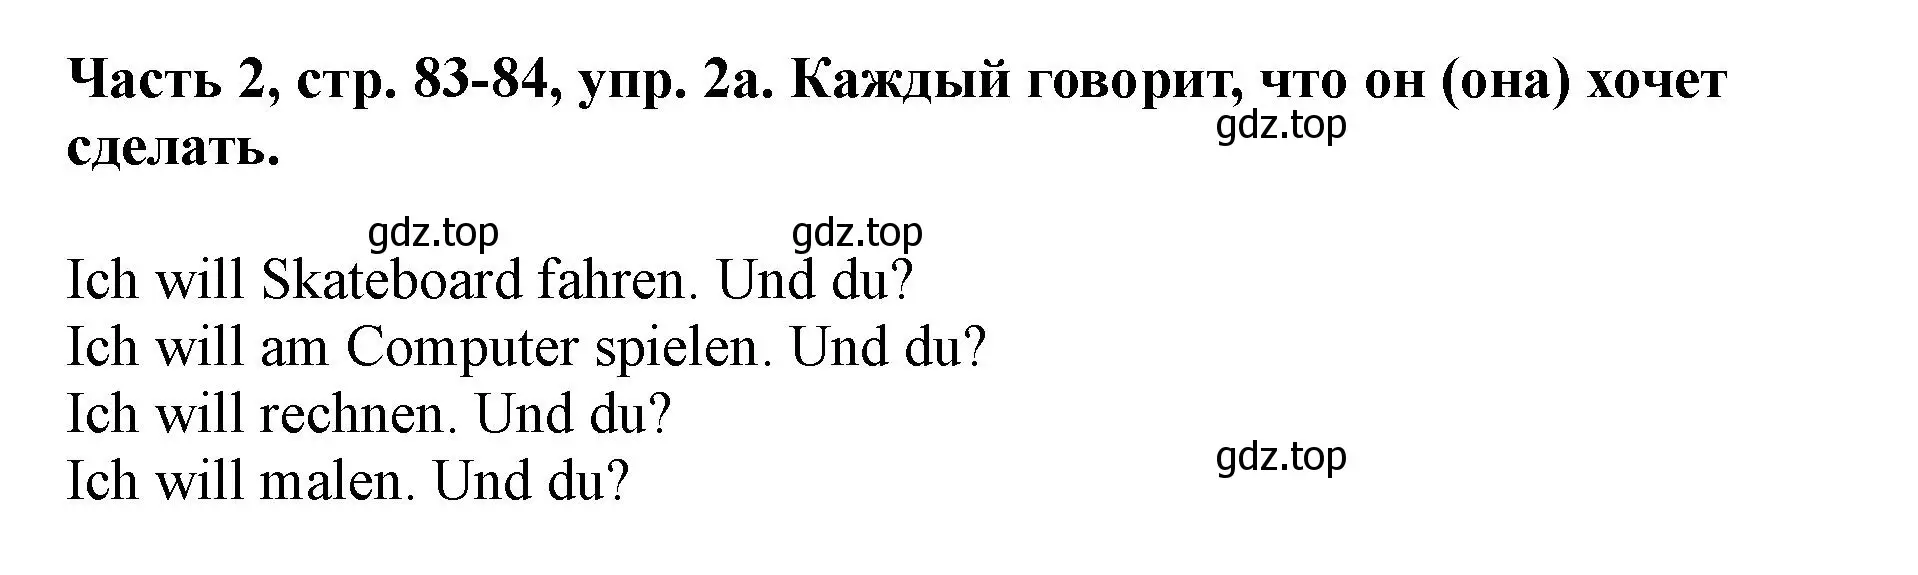 Решение номер 2 (страница 83) гдз по немецкому языку 2 класс Бим, Рыжова, учебник 2 часть